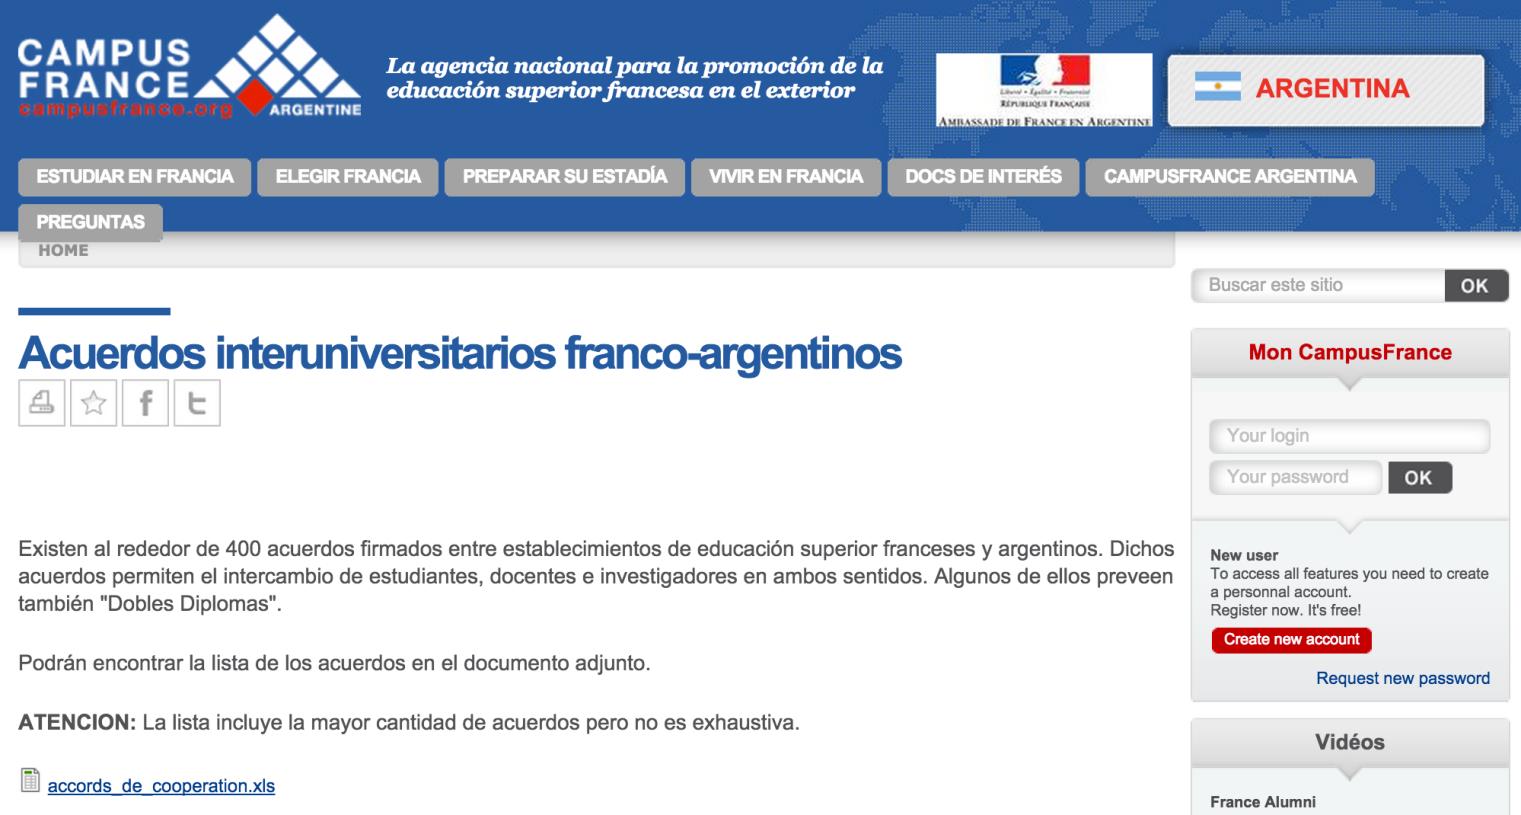 educación superior franceses y argentinos.